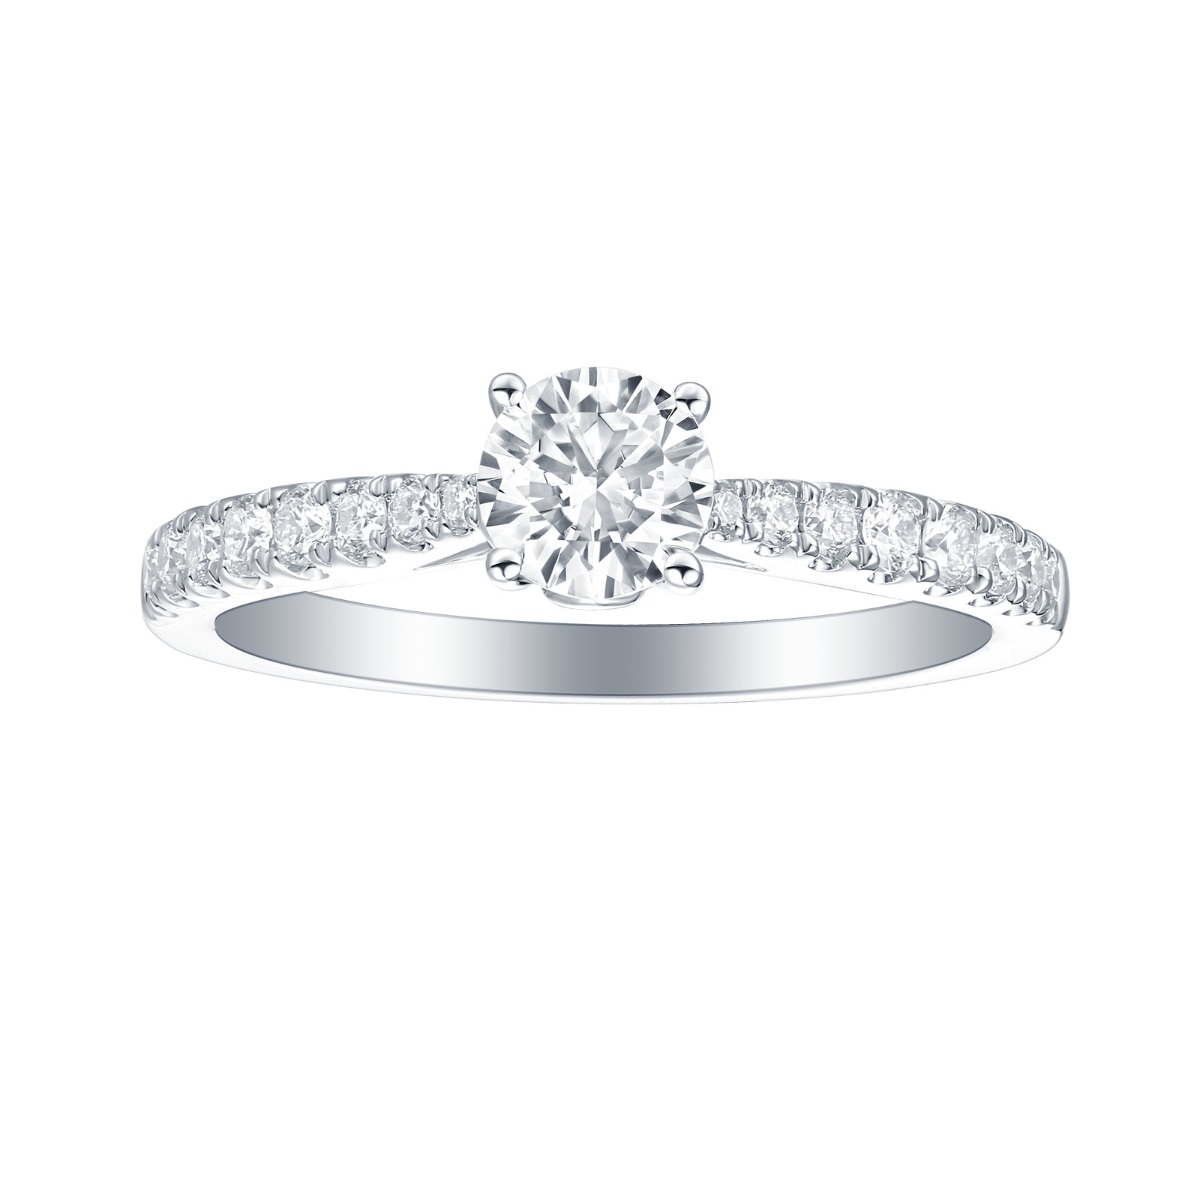 R35883WHT – 18K White Gold Diamond Ring, 1.24 TCW